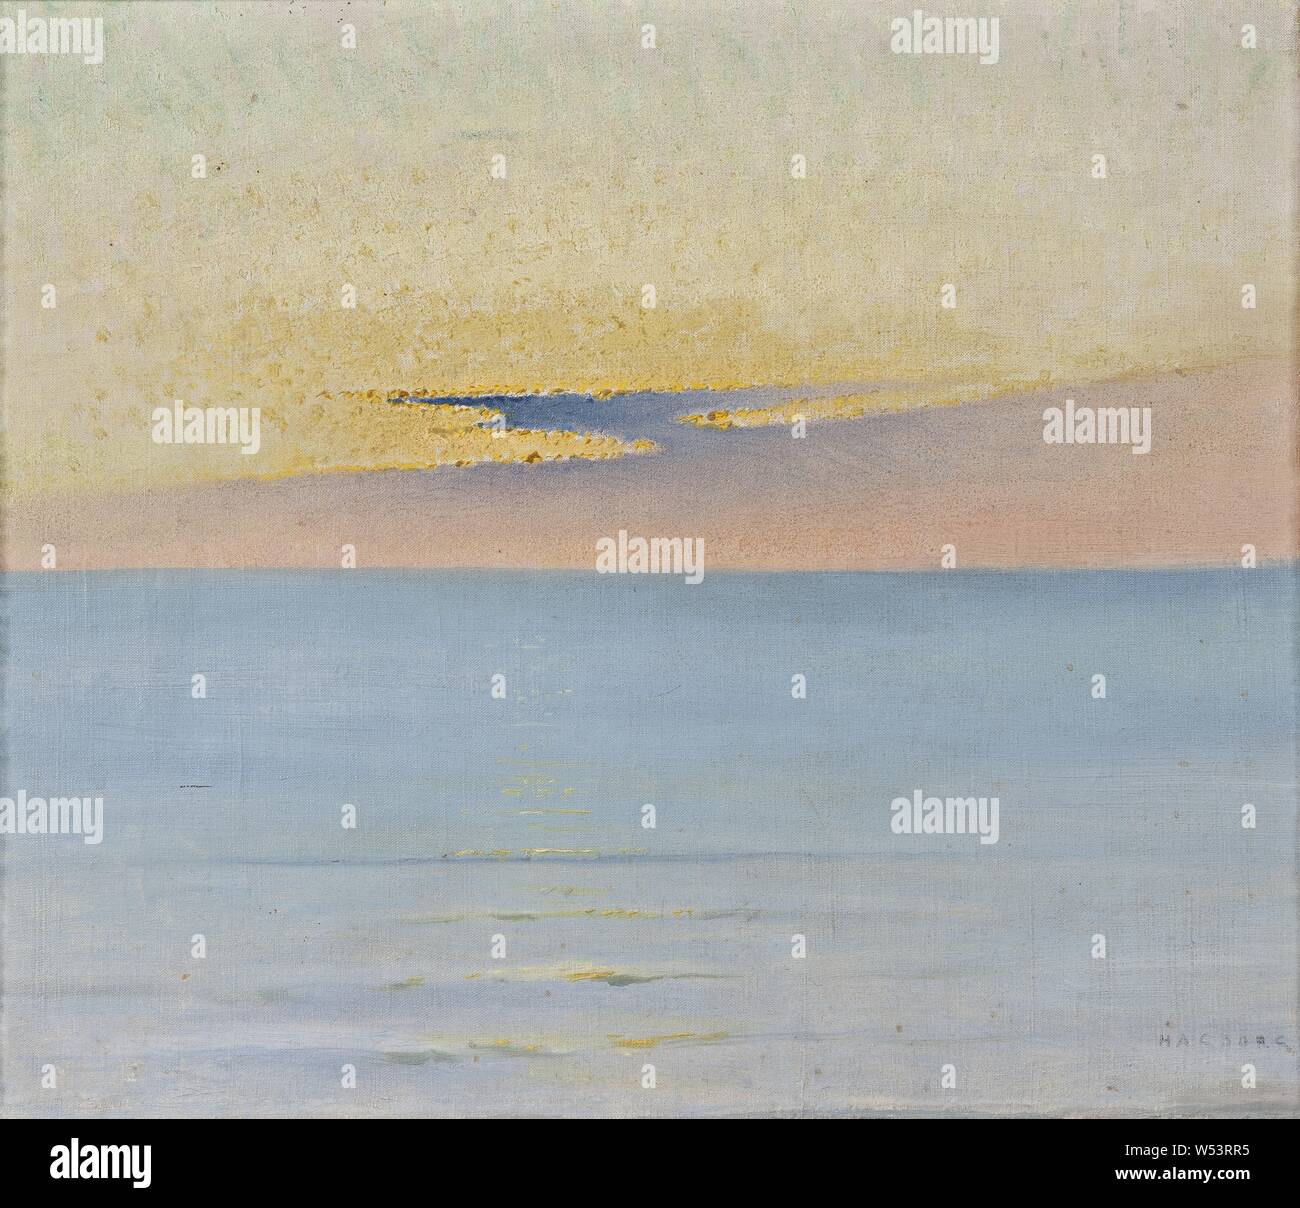 August Hagborg, dans la mer au coucher du soleil, le suédois dans le coucher du soleil la lumière, peinture, huile sur toile, hauteur, 29,5 cm (11,6 pouces), largeur, 35 cm (13,7 pouces), signé, HAGBORG. Banque D'Images